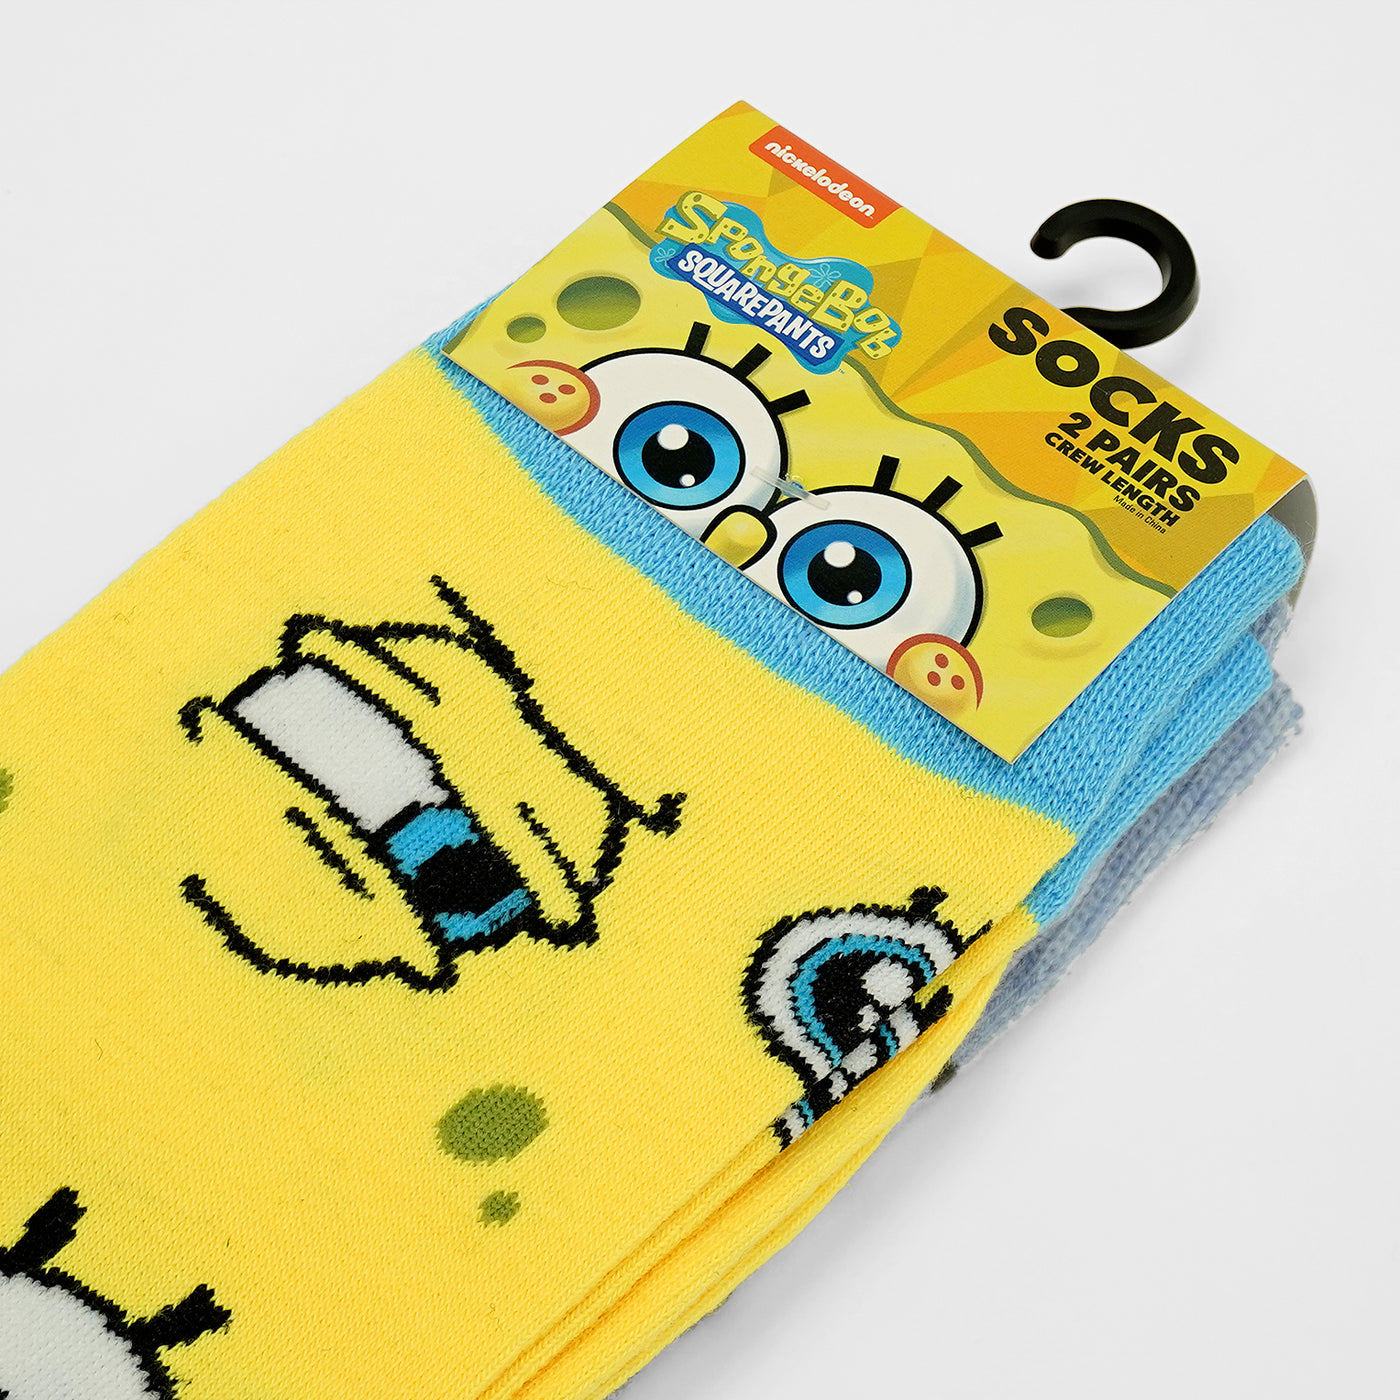 Spongebob Squarepants Crew Socks - 2 Pack